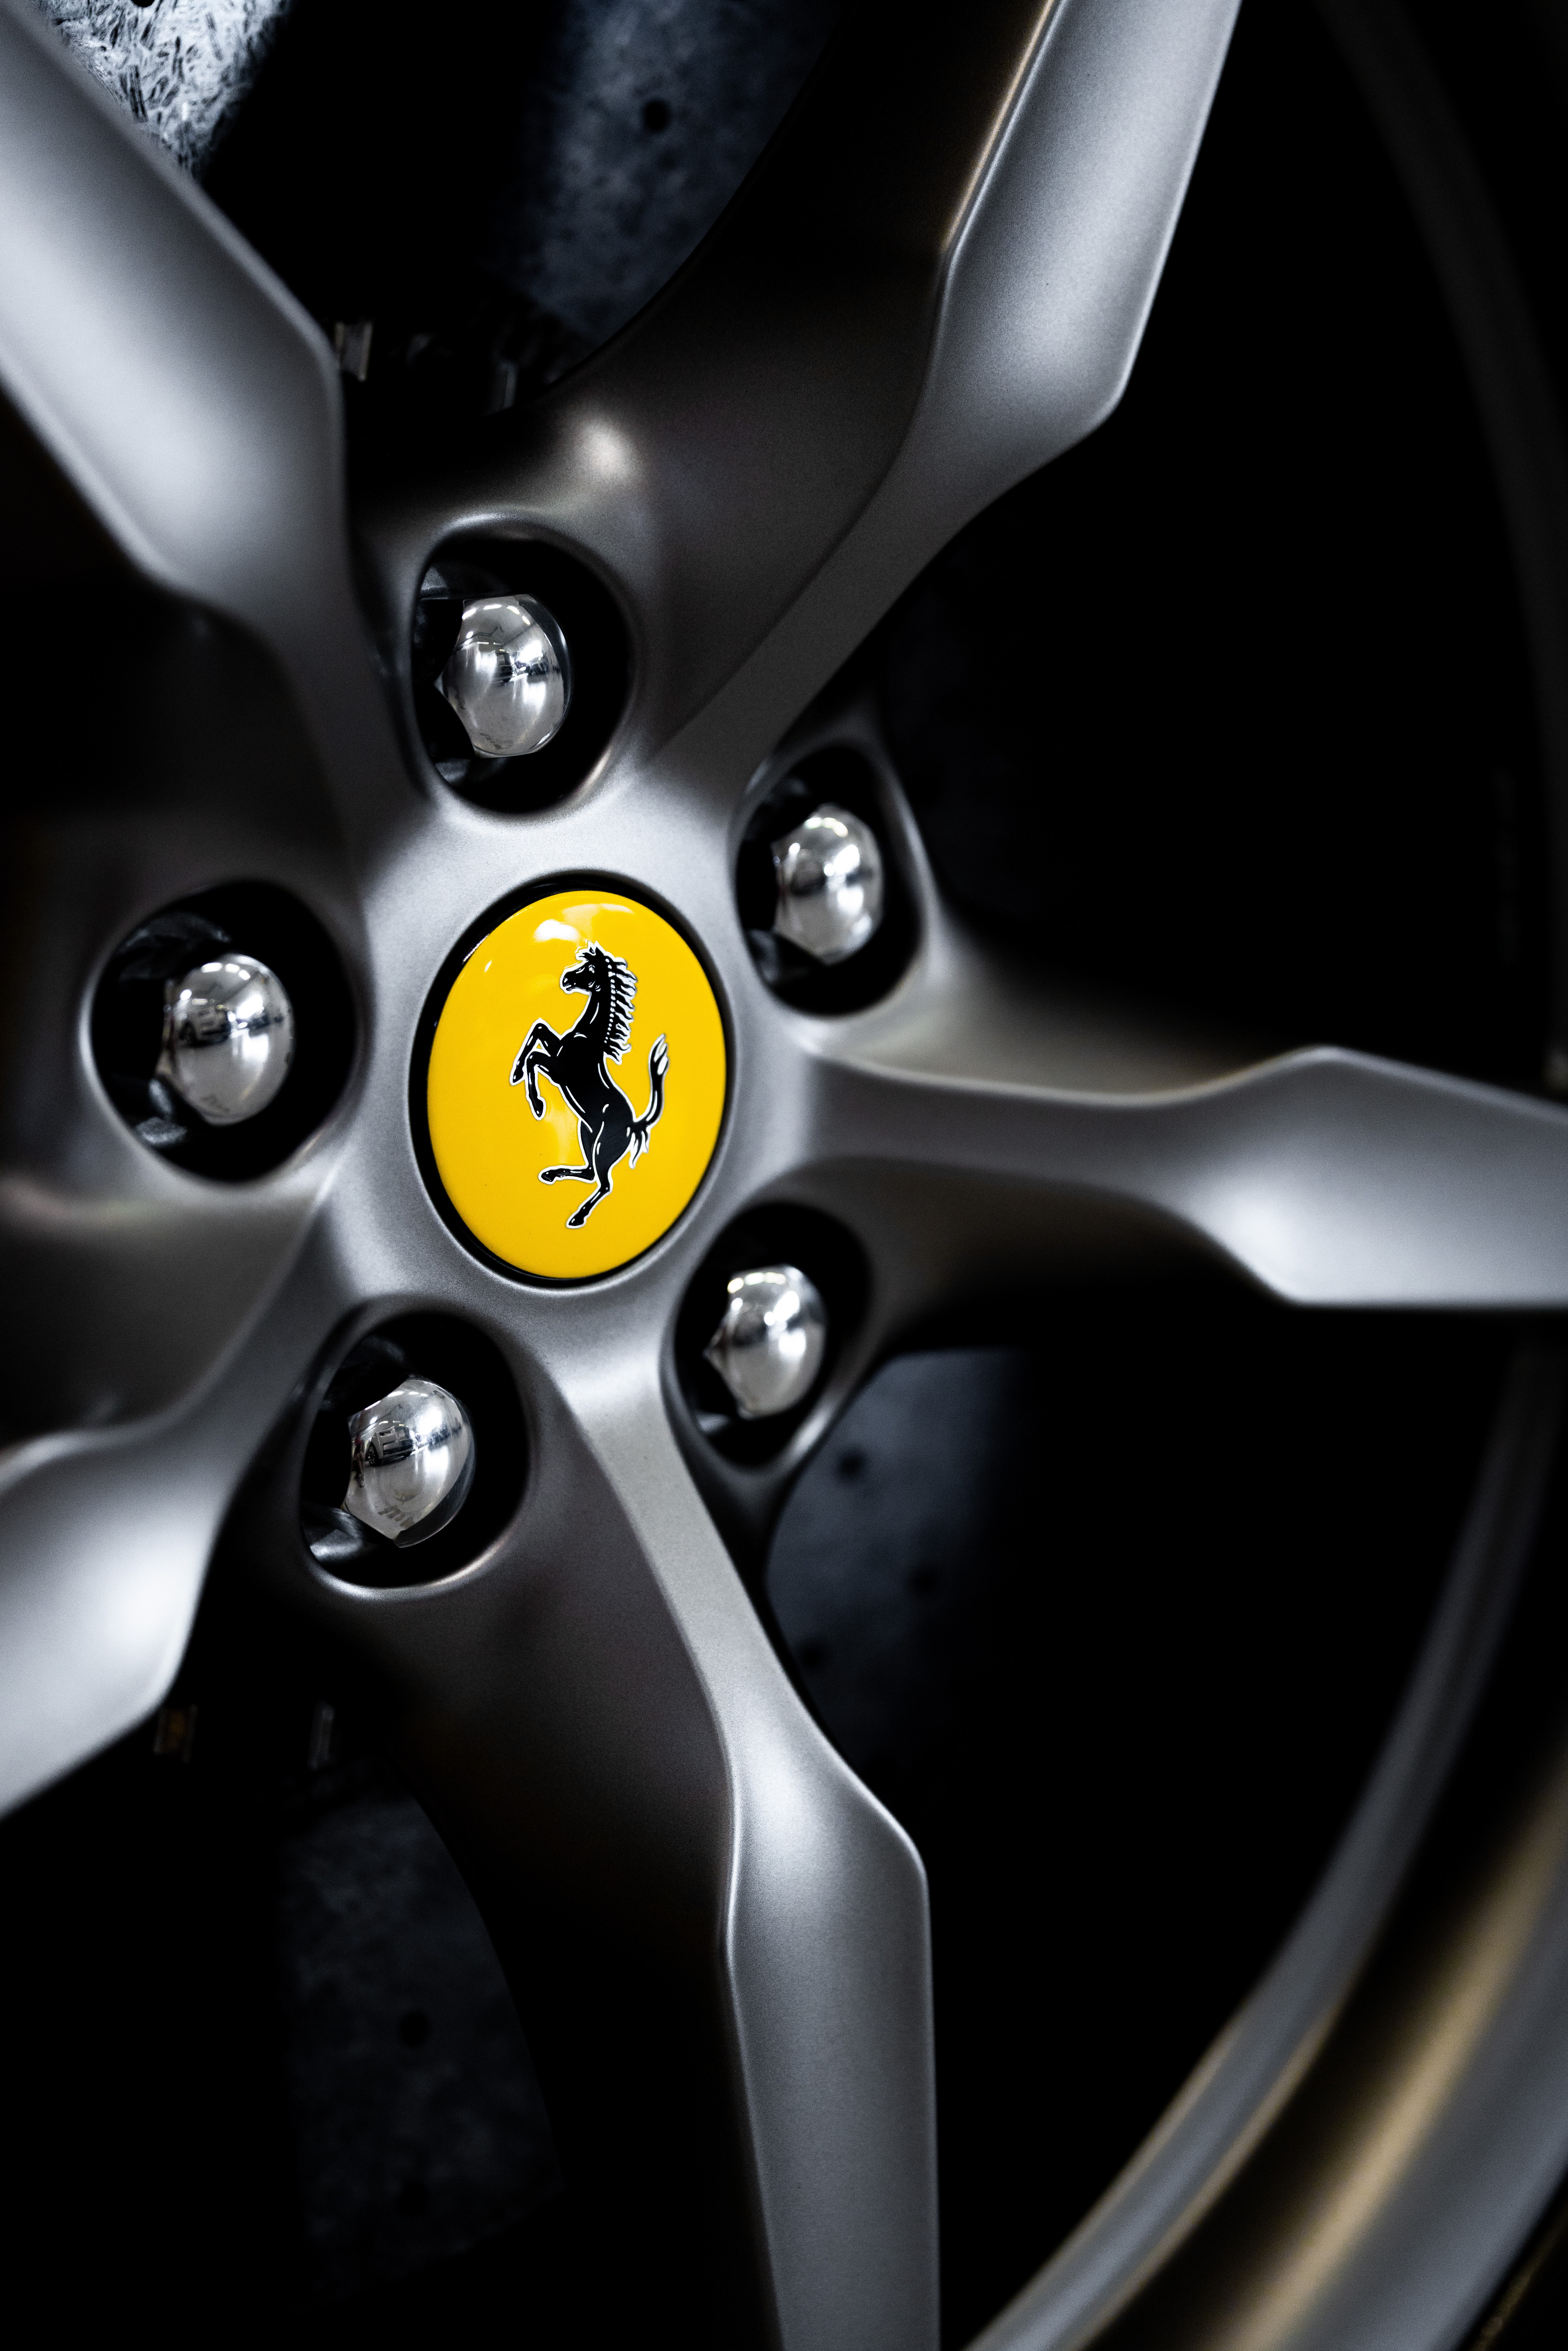 Descargar las imágenes de Ferrari gratis para teléfonos Android y iPhone,  fondos de pantalla de Ferrari para teléfonos móviles